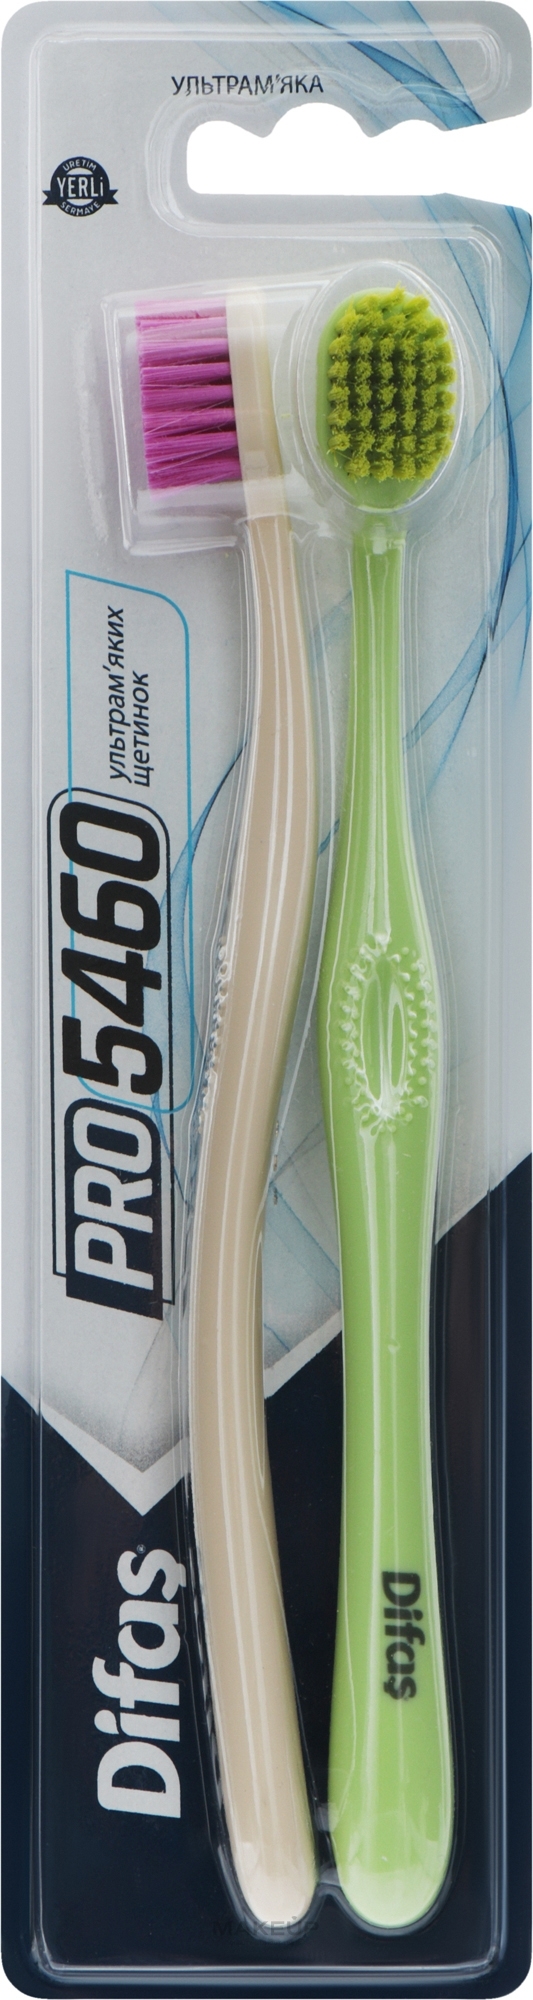 Набор зубных щеток "Ultra Soft", салатовая + бежевая - Difas PRO 5460 — фото 2шт